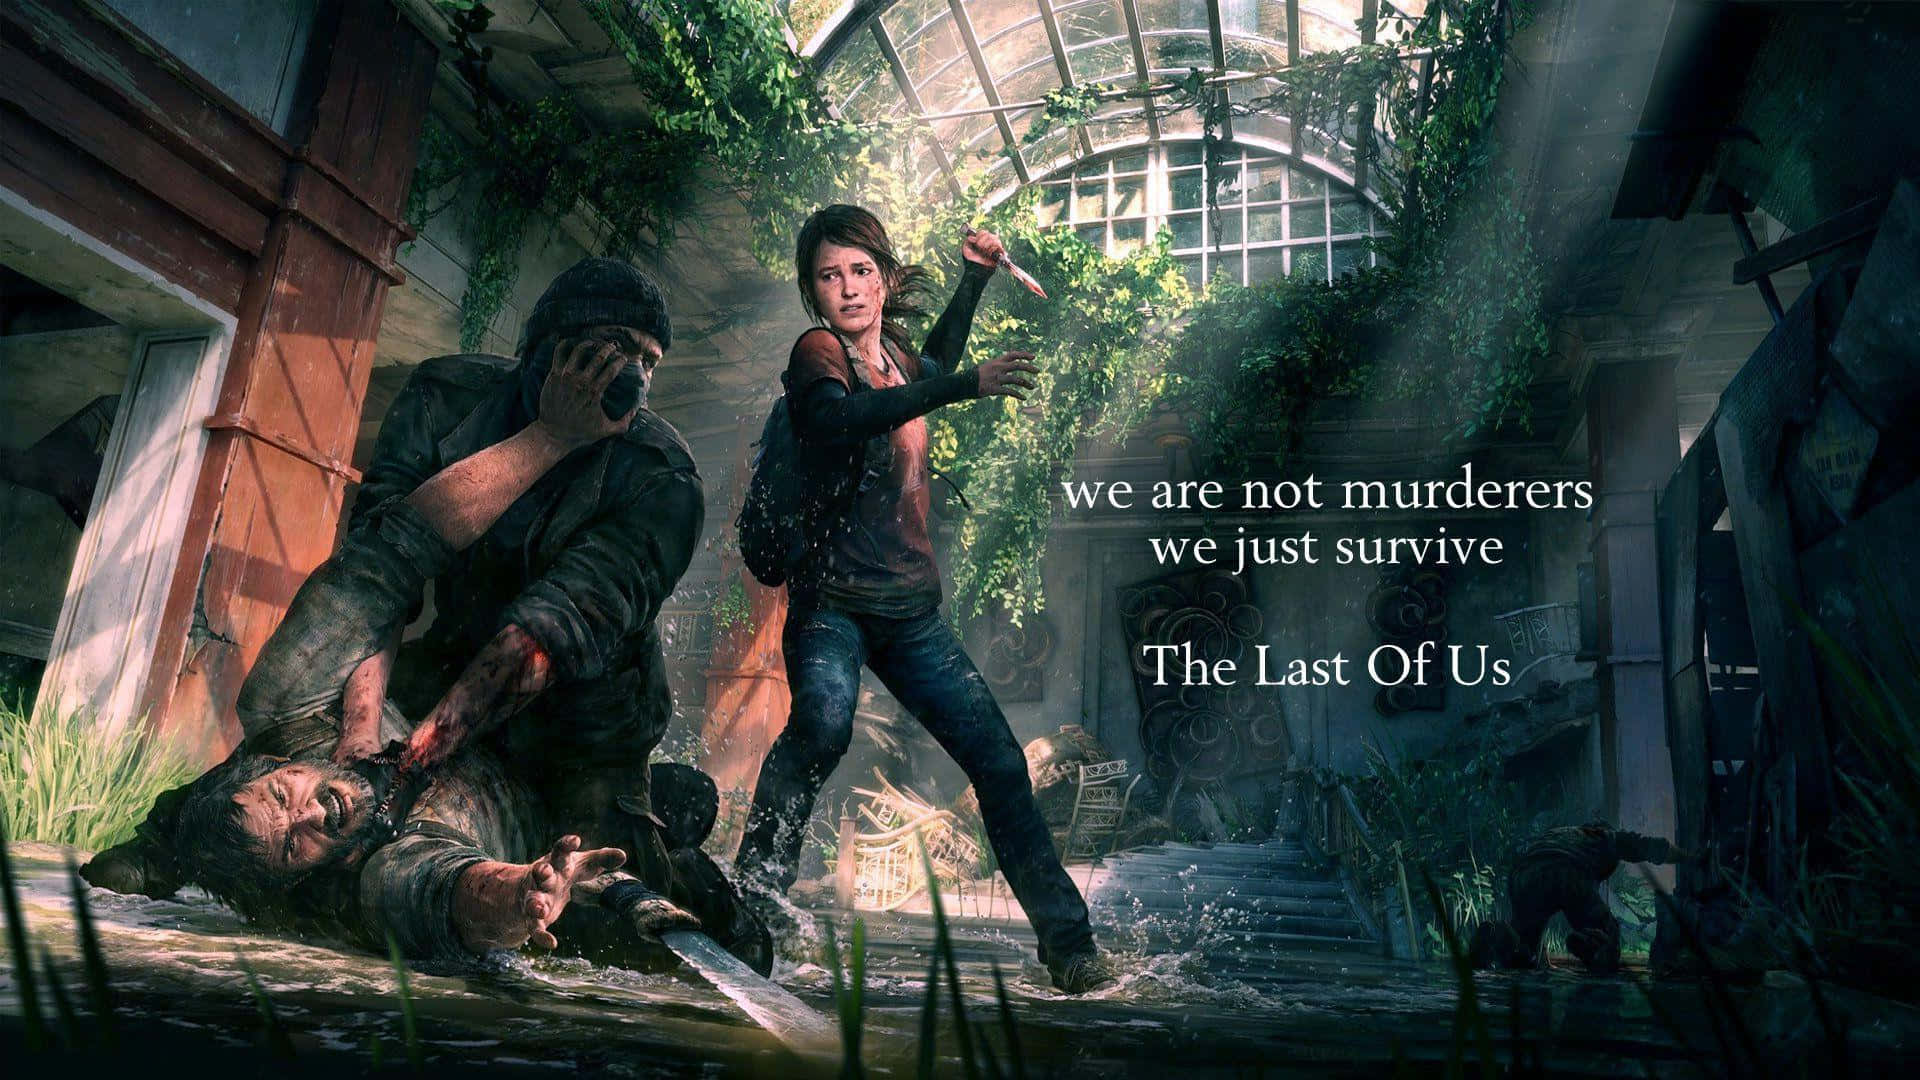 Elliee Joel Si Muovono Attraverso Un Mondo Post-apocalittico In The Last Of Us.